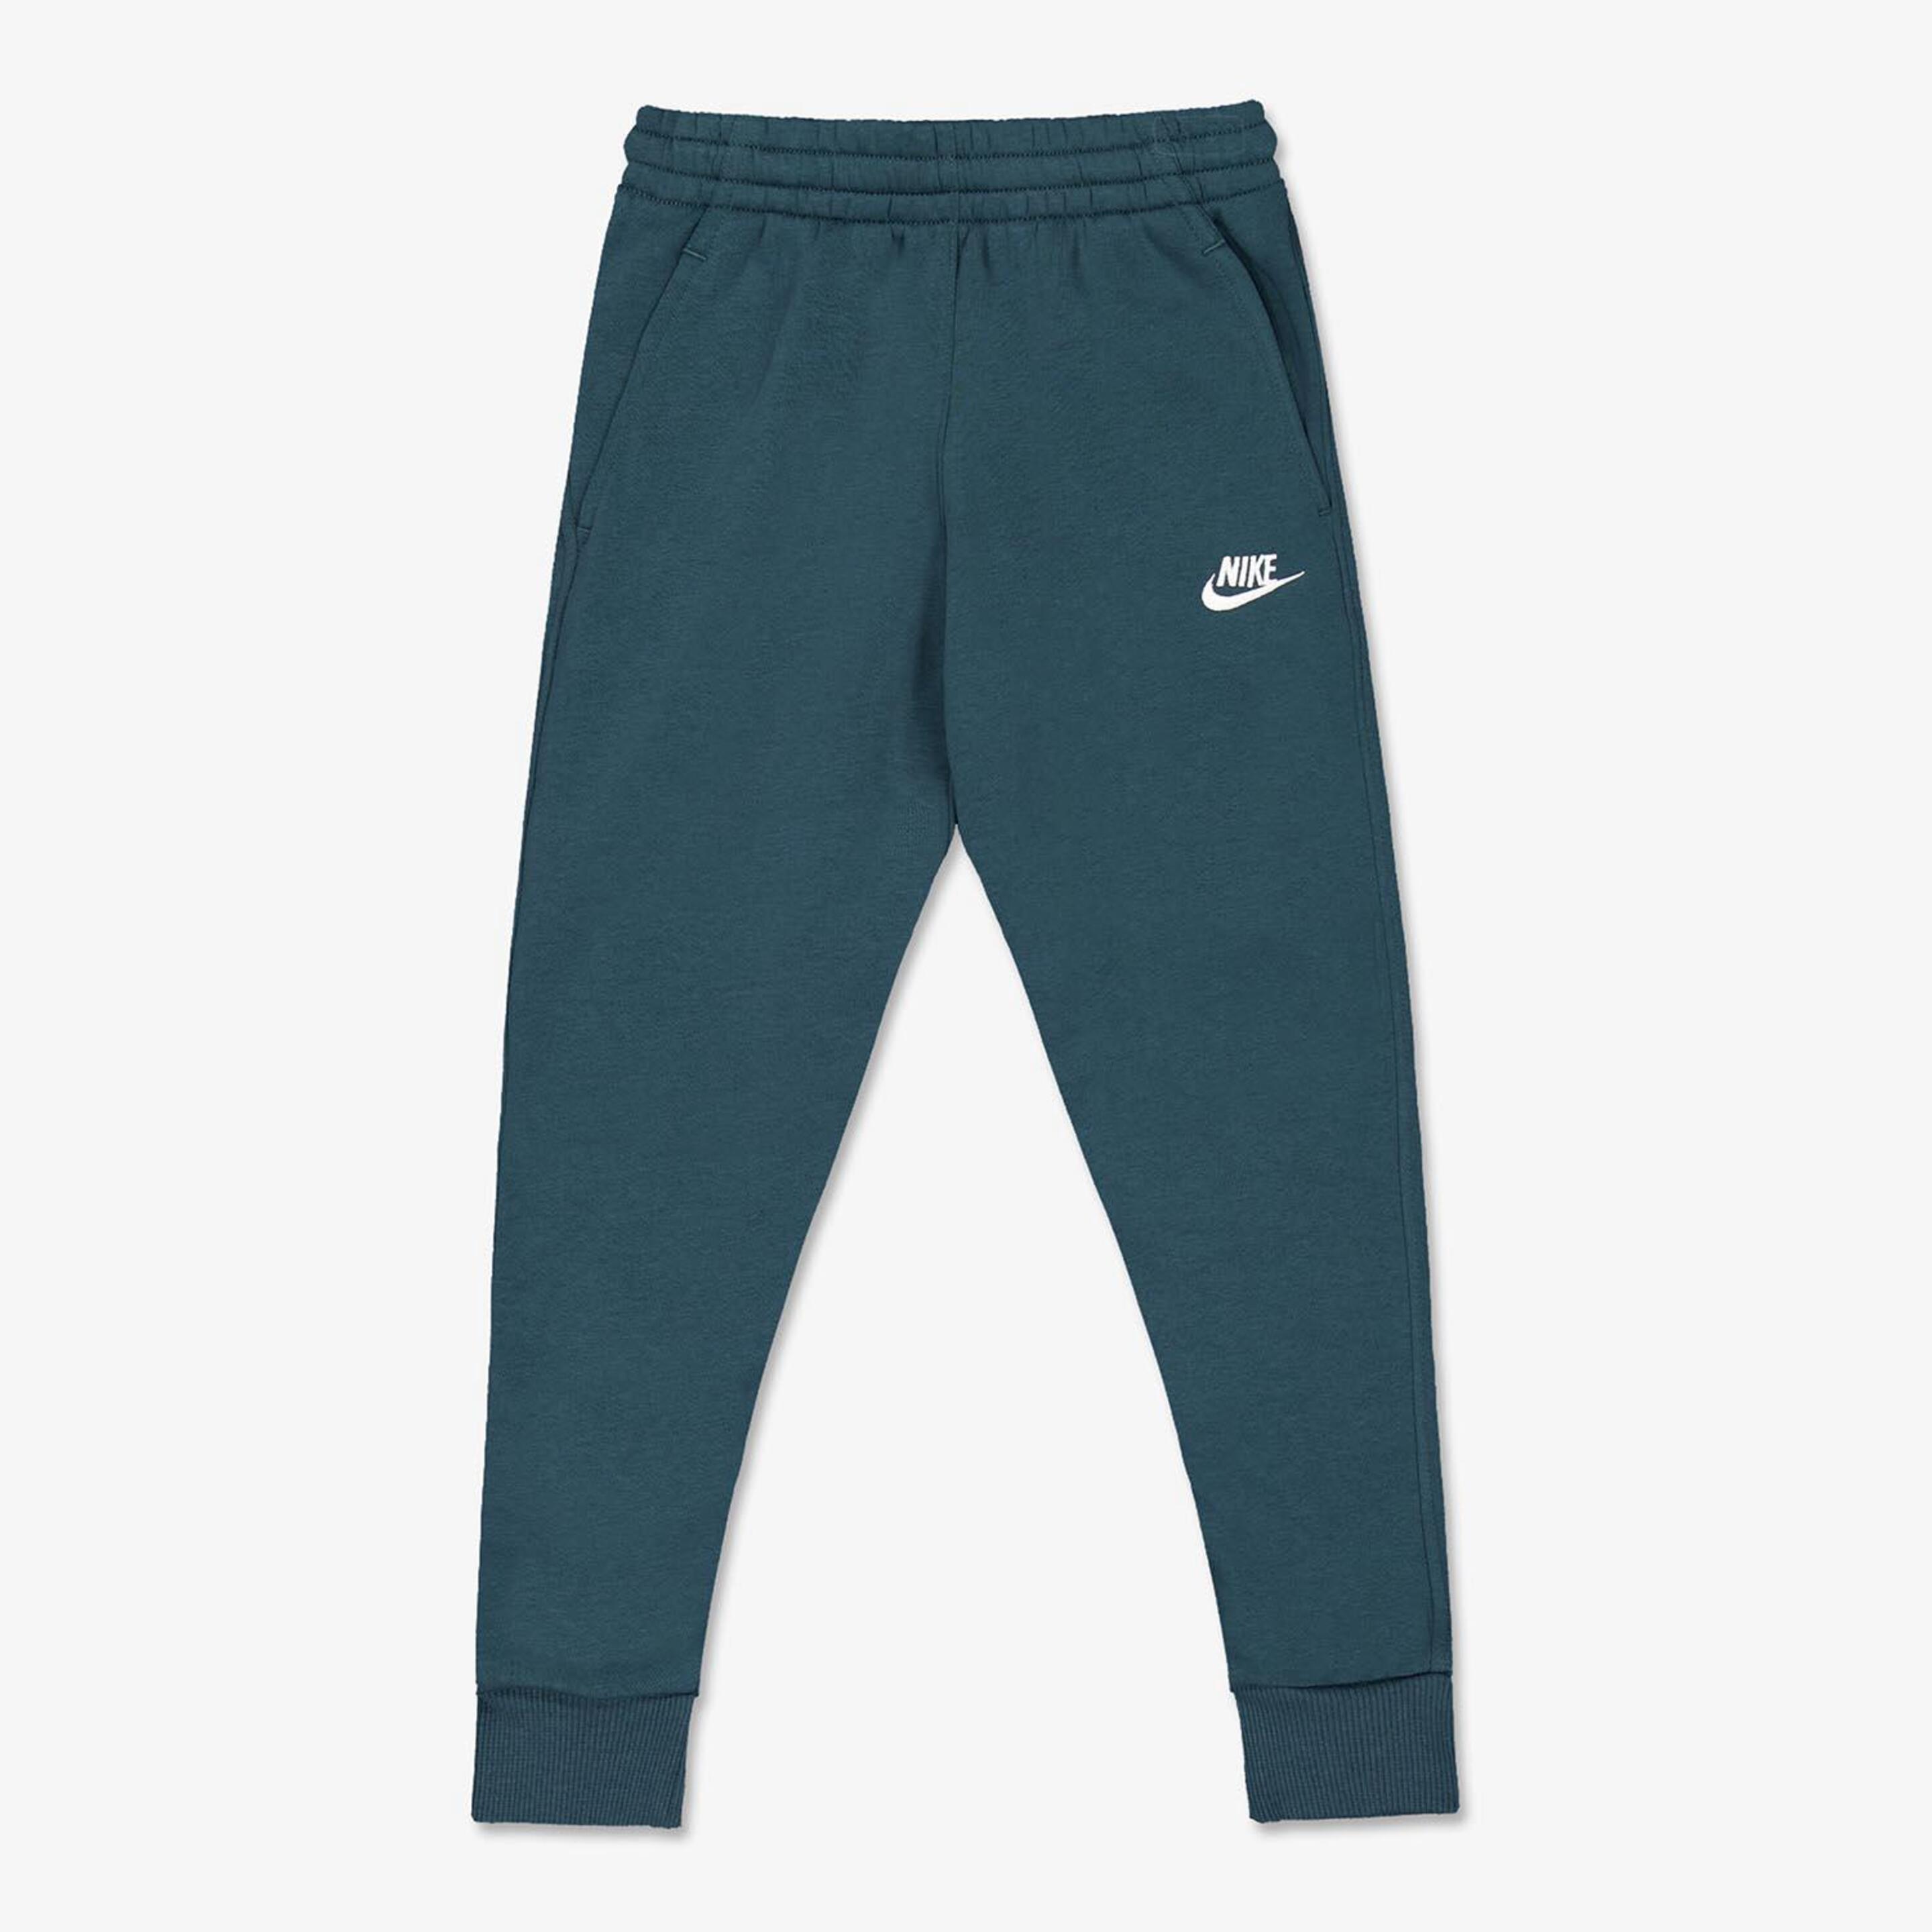 Pantalón Nike - verde - Pantalón Niño